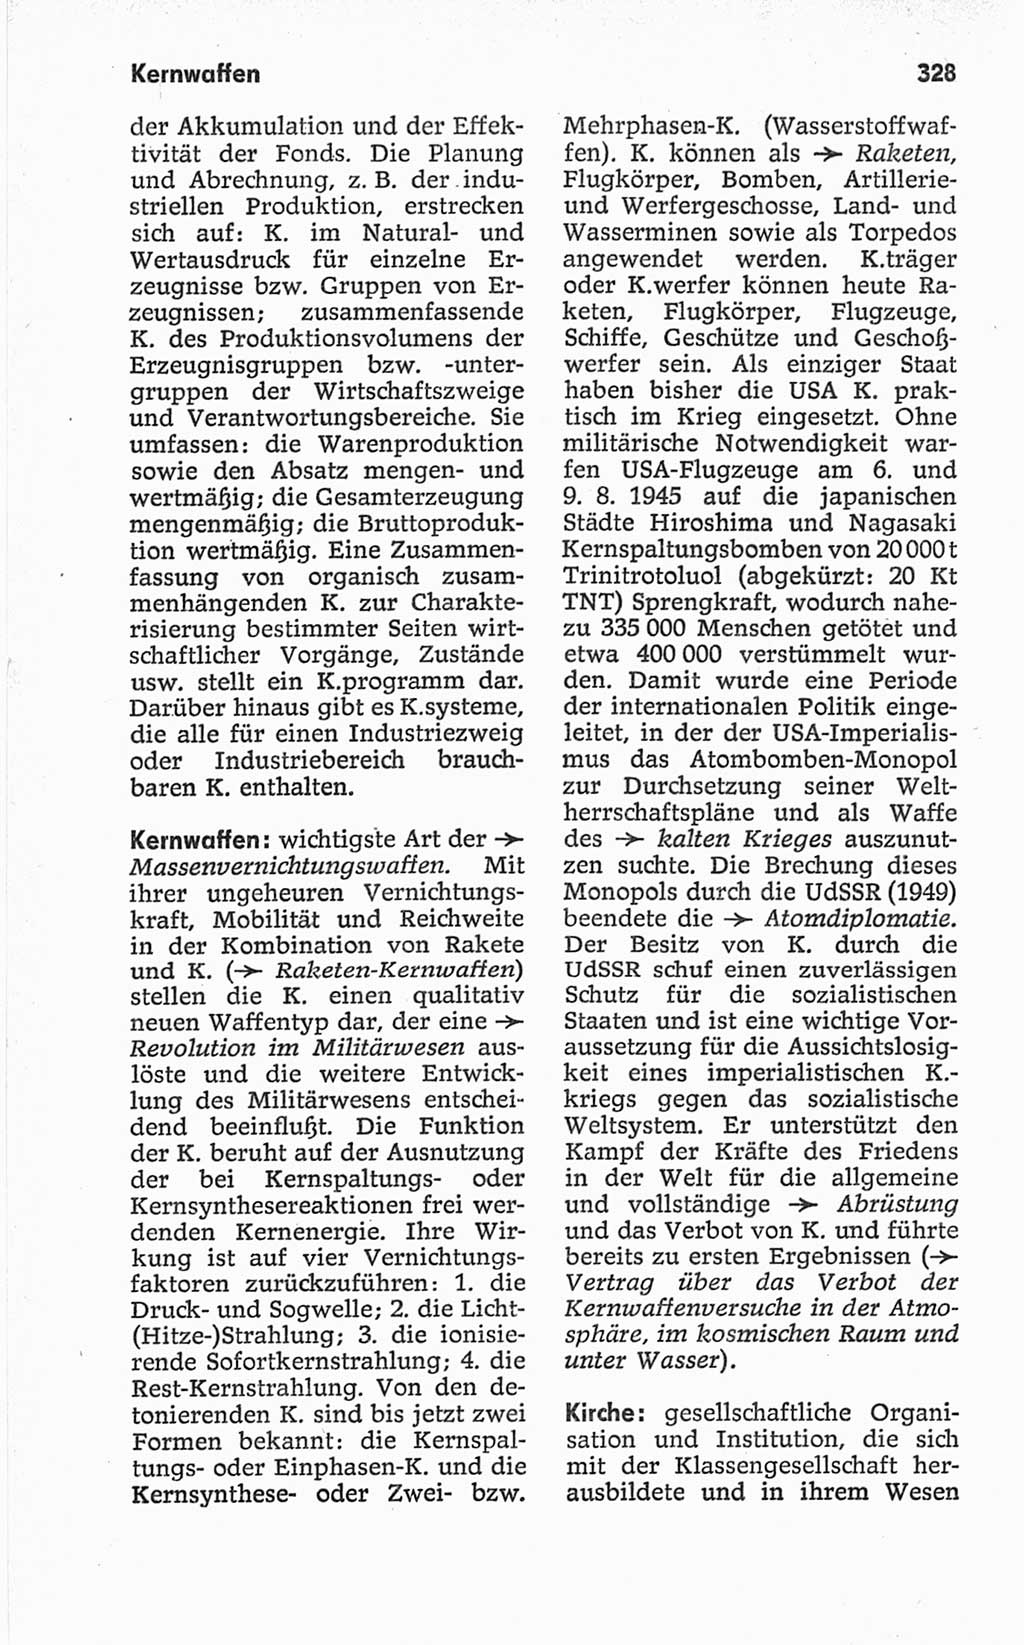 Kleines politisches Wörterbuch [Deutsche Demokratische Republik (DDR)] 1967, Seite 328 (Kl. pol. Wb. DDR 1967, S. 328)